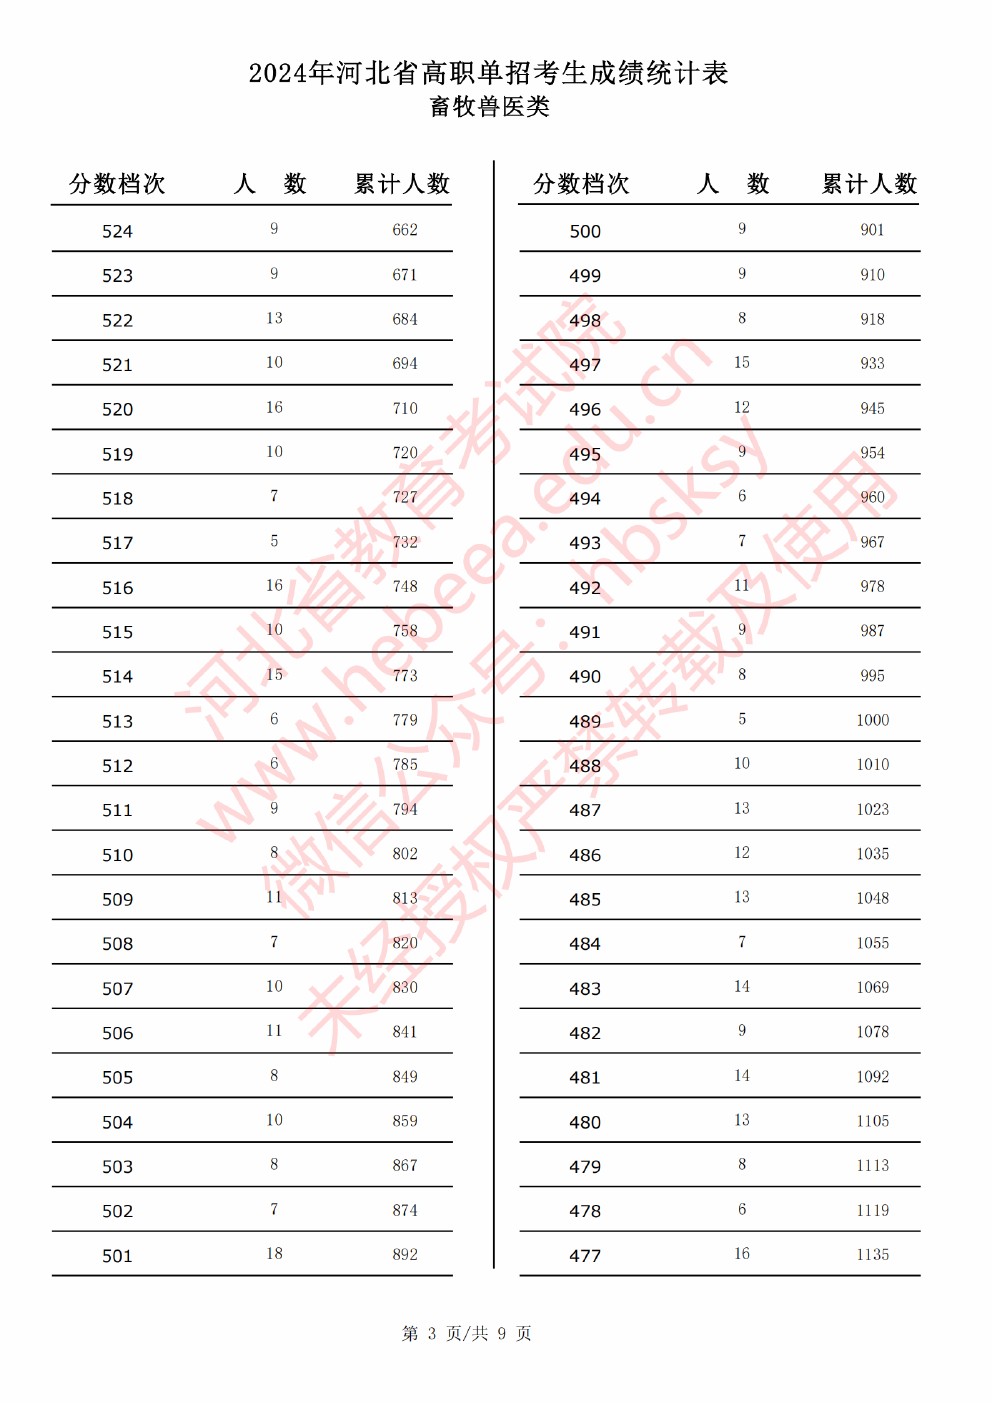 2024年河北省高职单招考试畜牧兽医类成绩统计表 